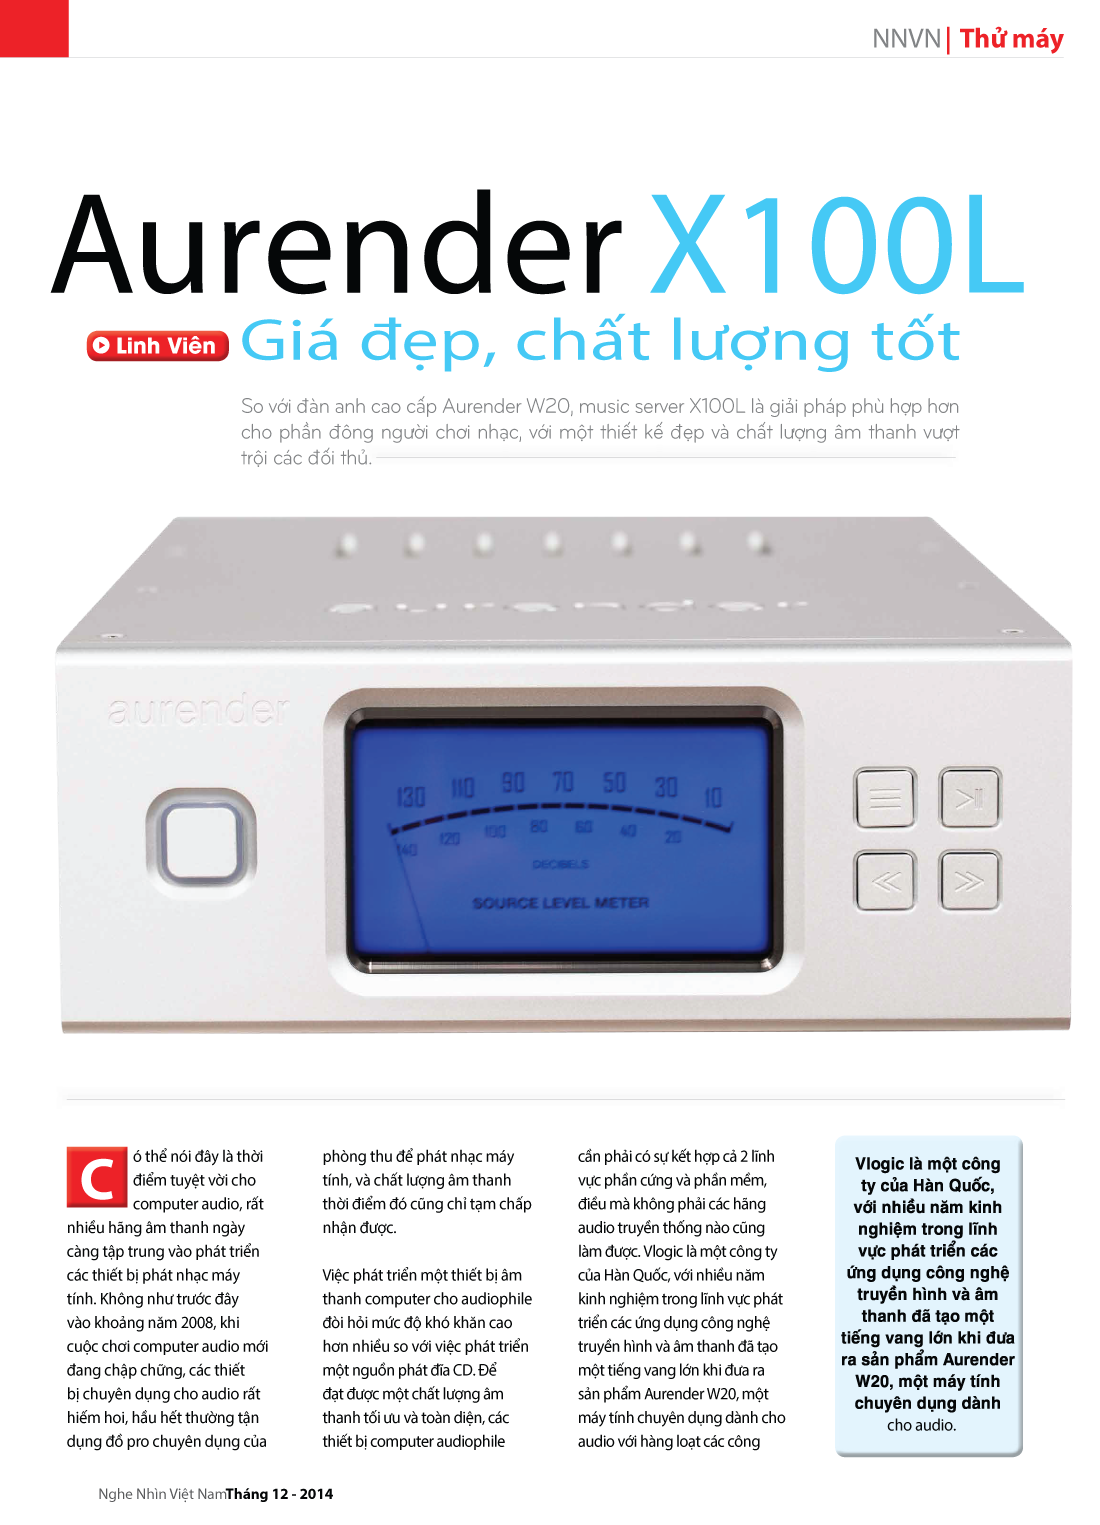 Aurender X100L – Giá đẹp, chất lượng tốt